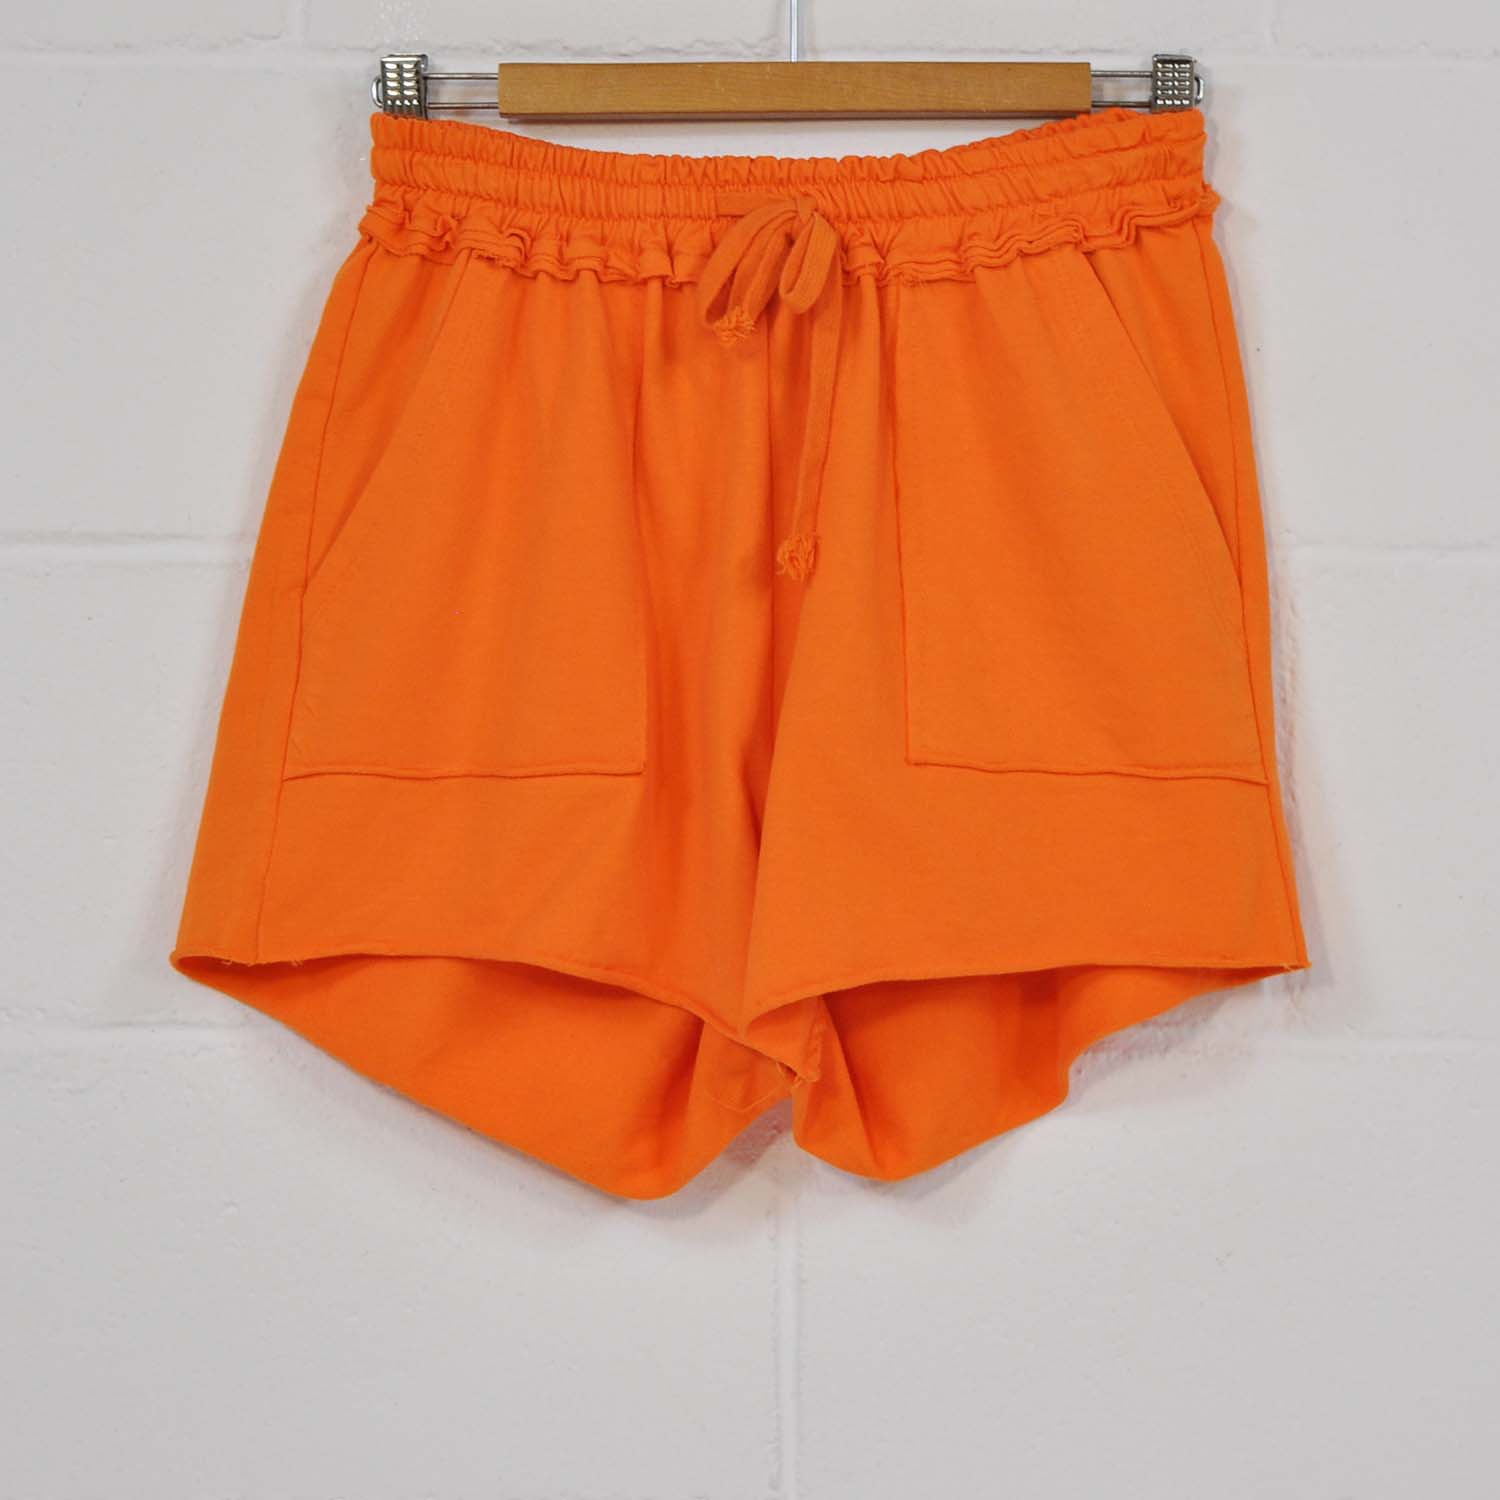 Orange pocket shorts